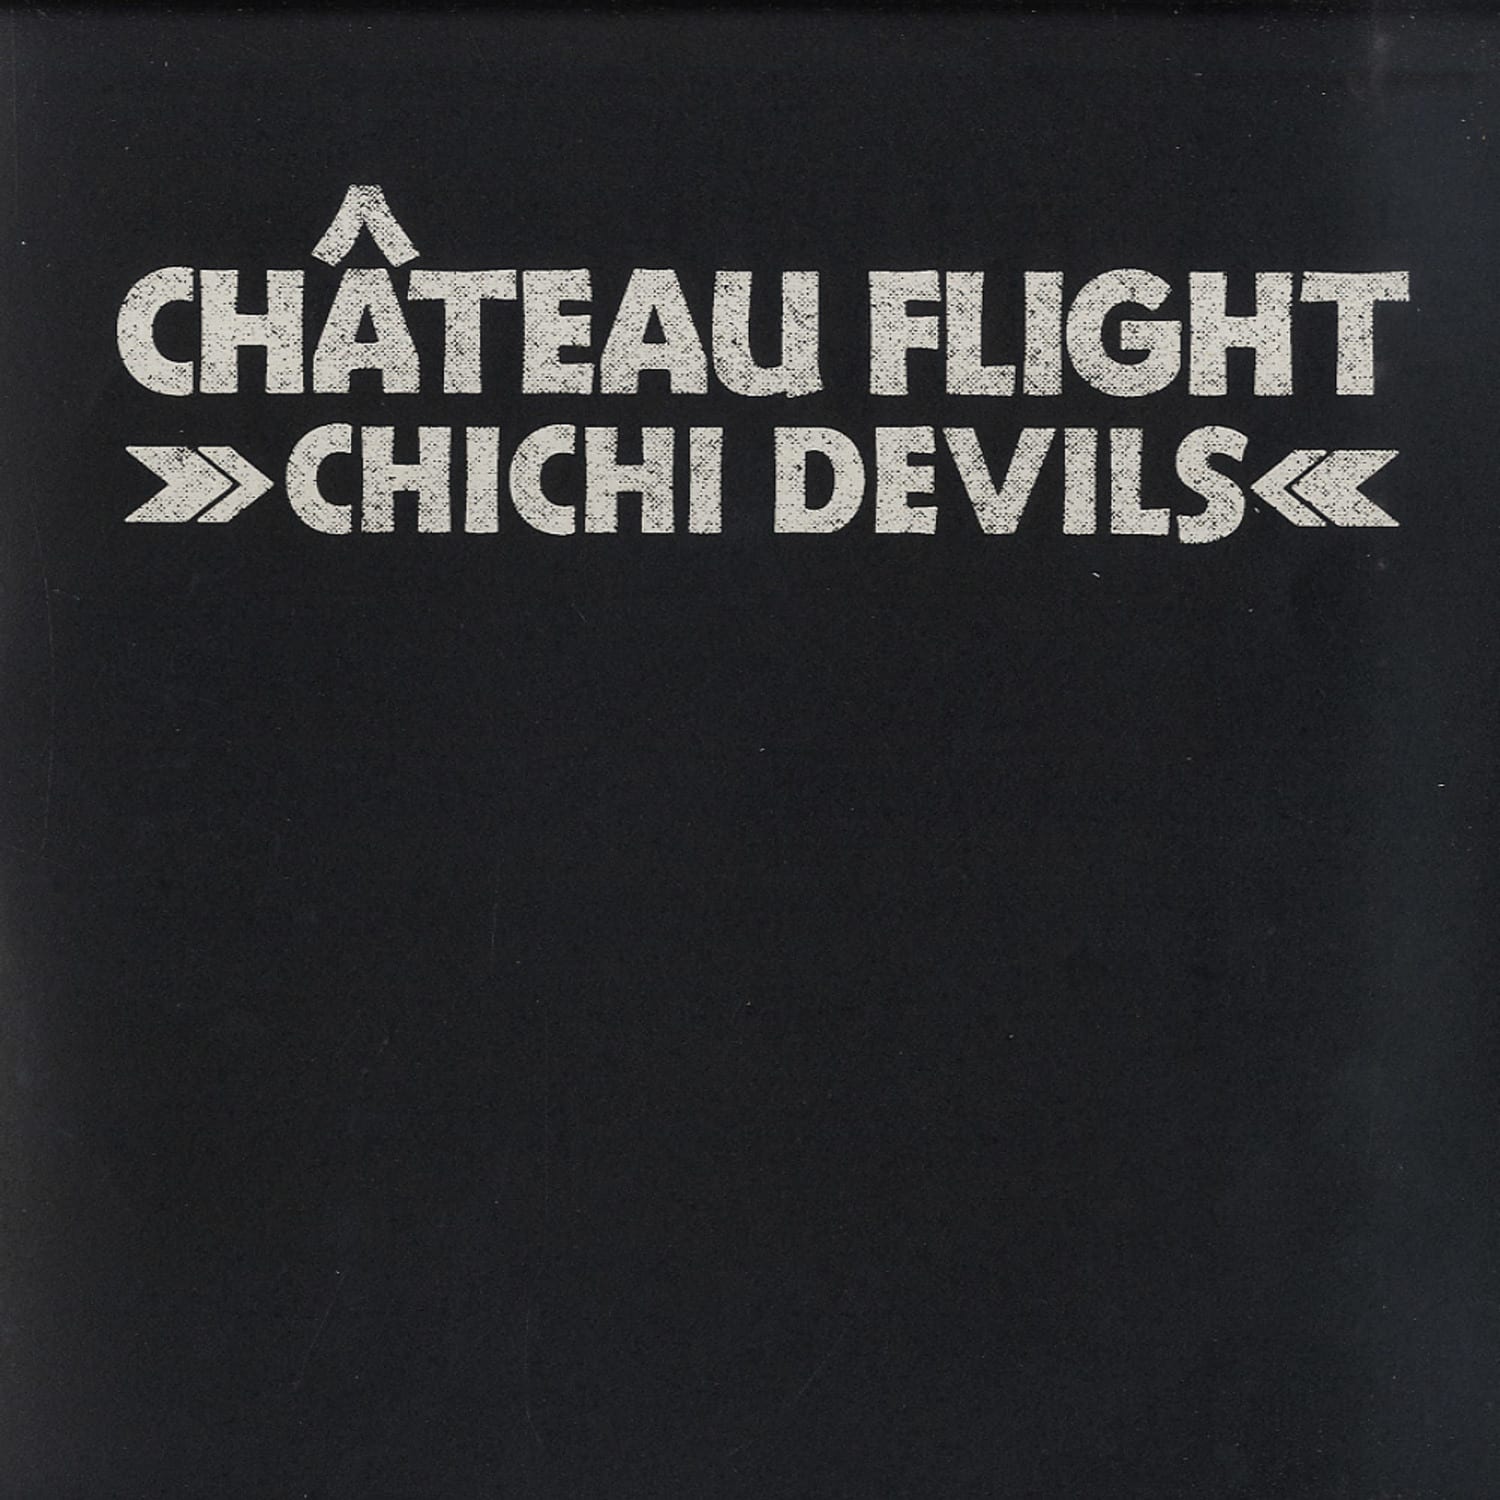 Chateau Flight - CHICHI DEVILS 